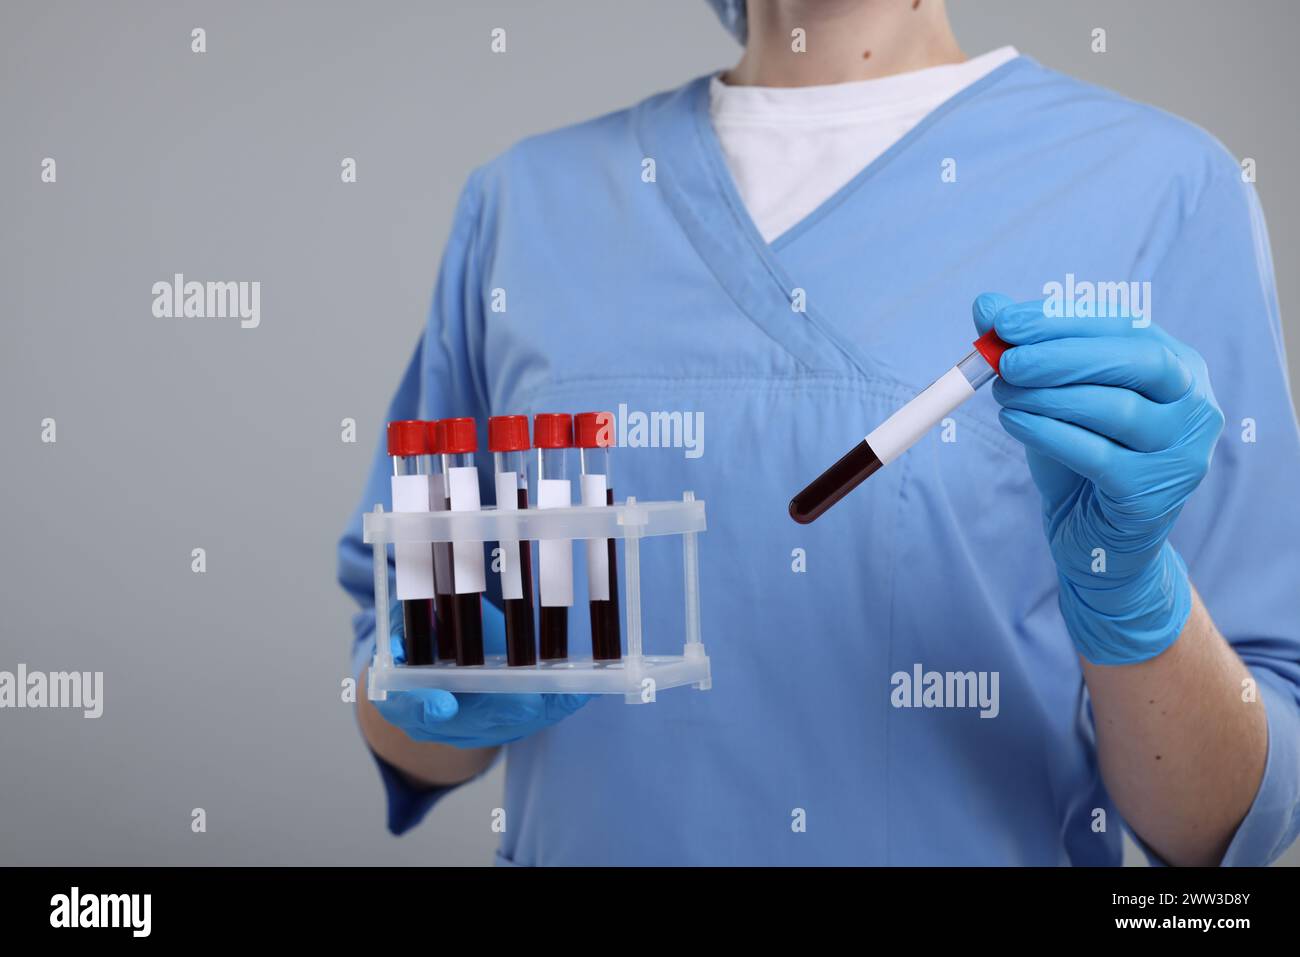 Analisi di laboratorio. Medico con campioni di sangue in provette su sfondo grigio chiaro Foto Stock